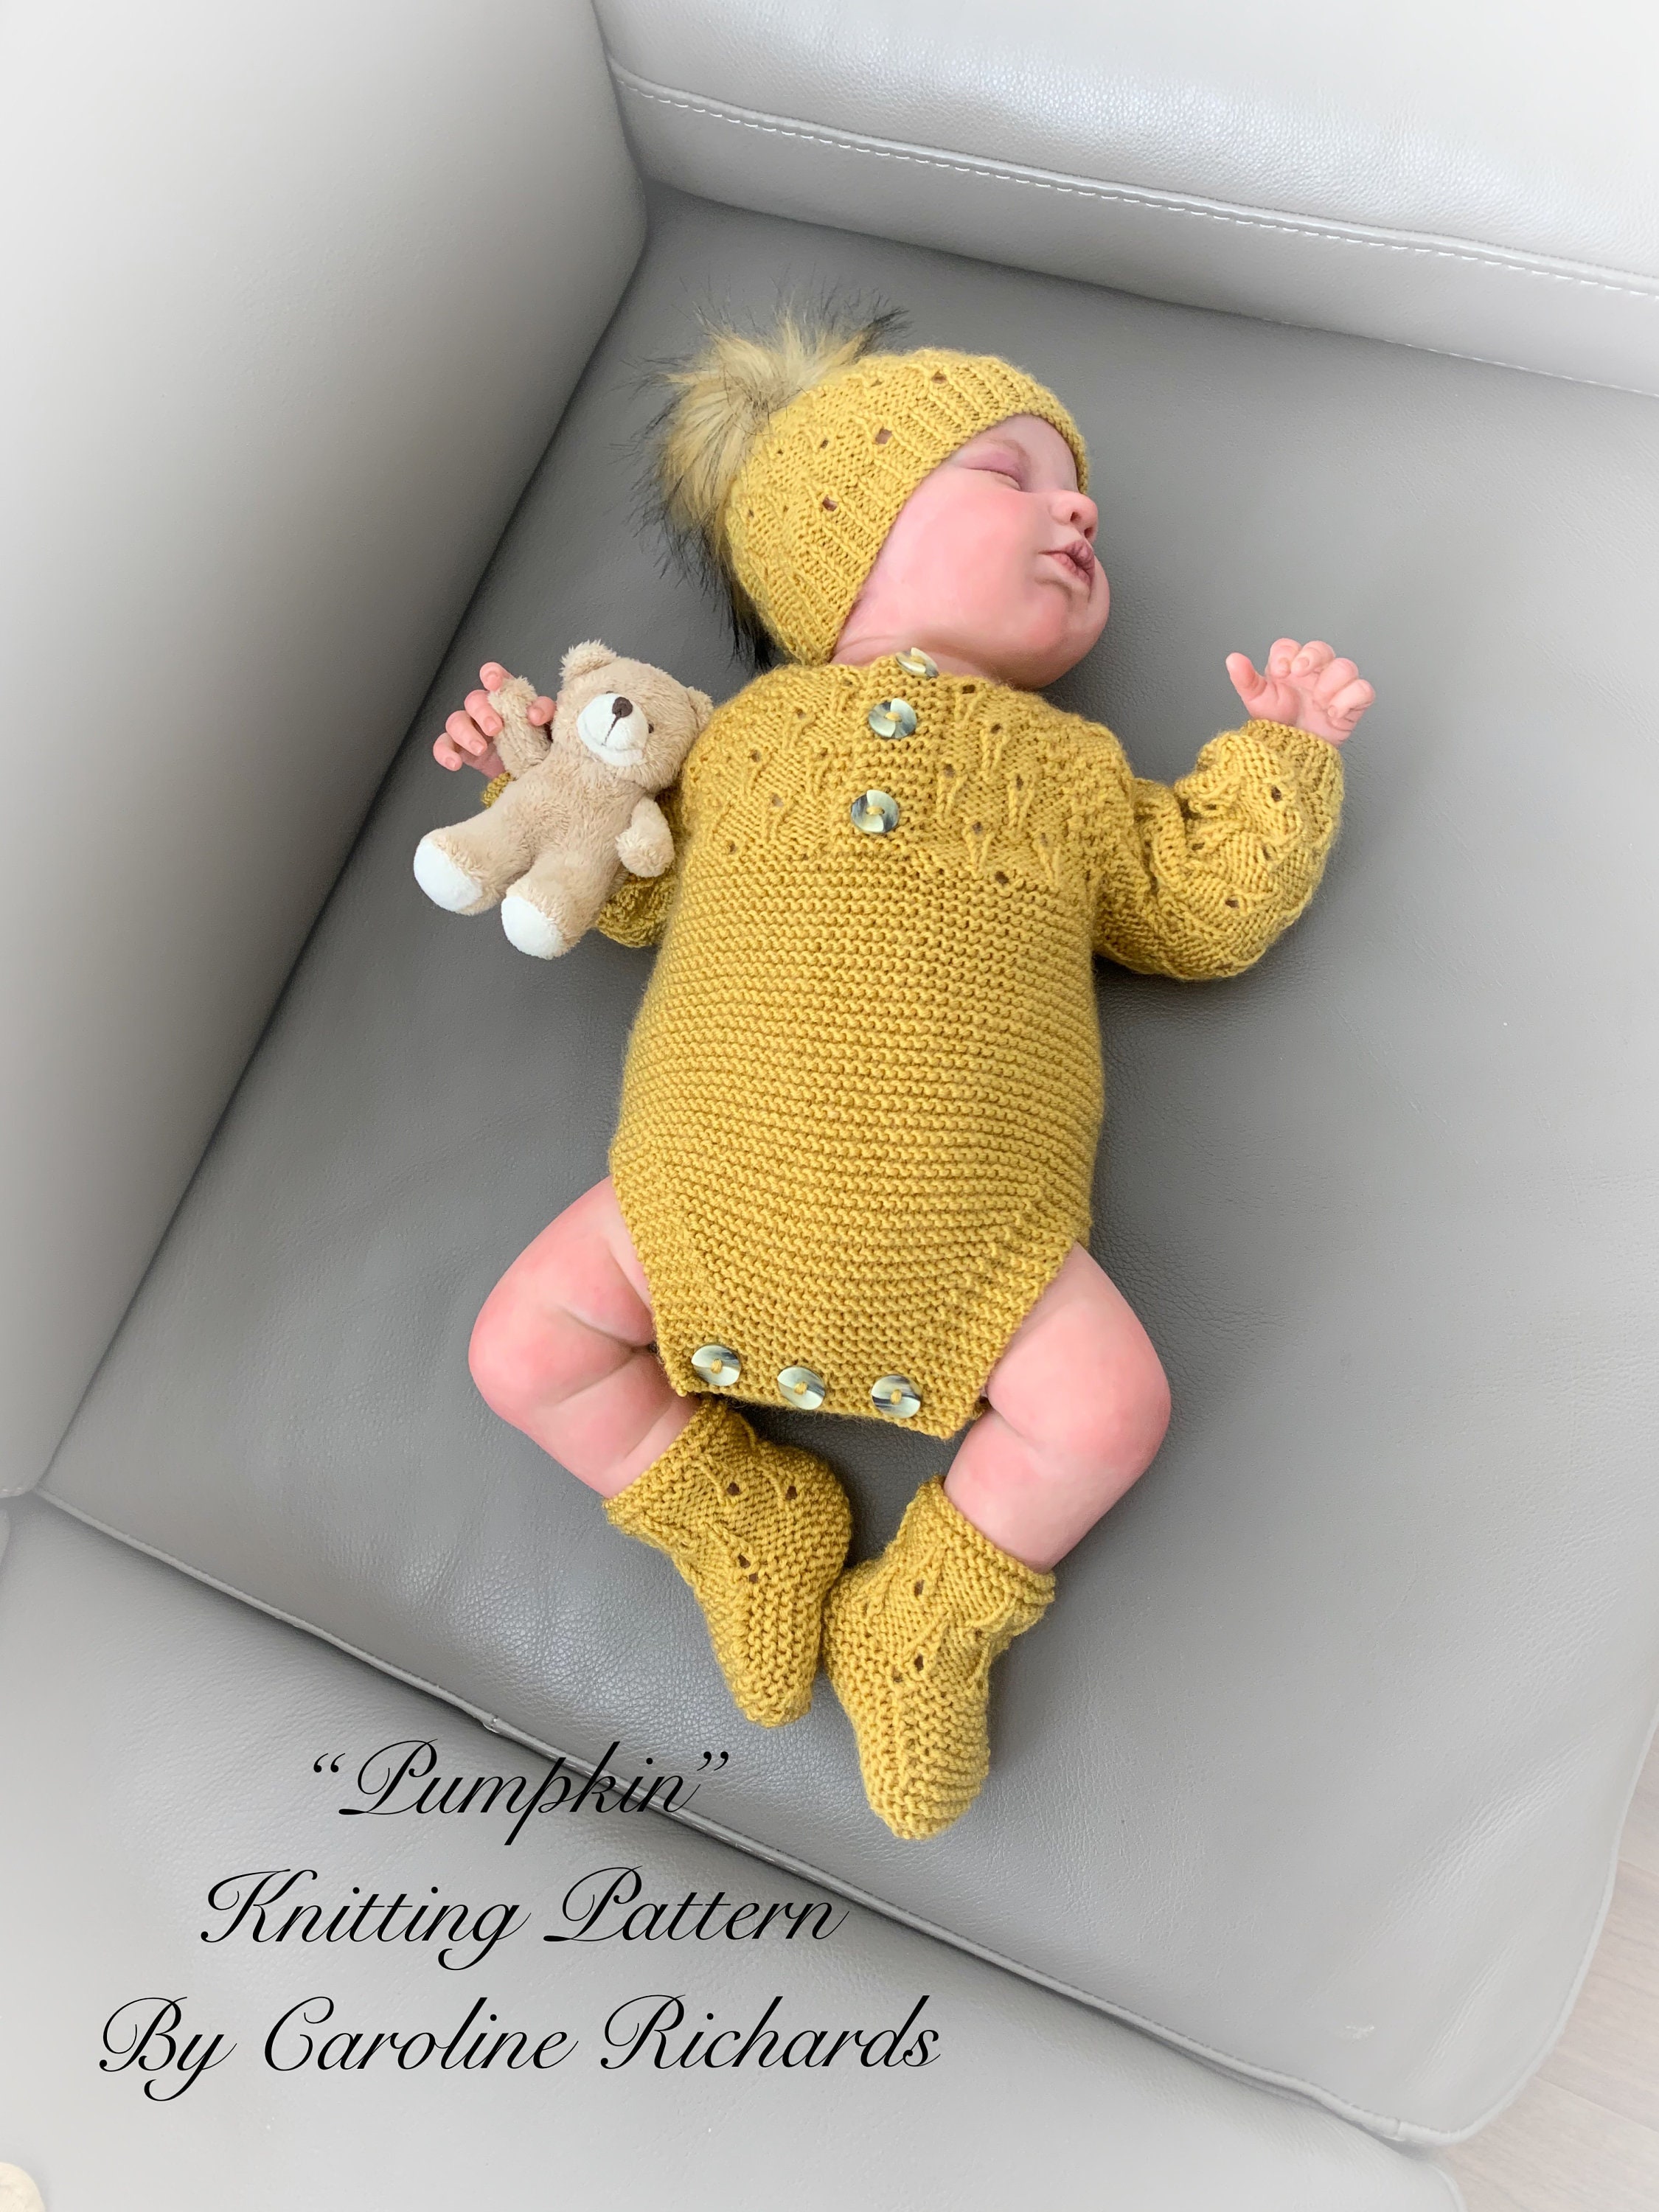 RELAX 17inch Reborn Dolls Realistic Newborn, Whole body siliconeToddler  Toys, Sleeping Baby Doll Cute Lifelike Baby Boys Girls Xmas Gift(Random